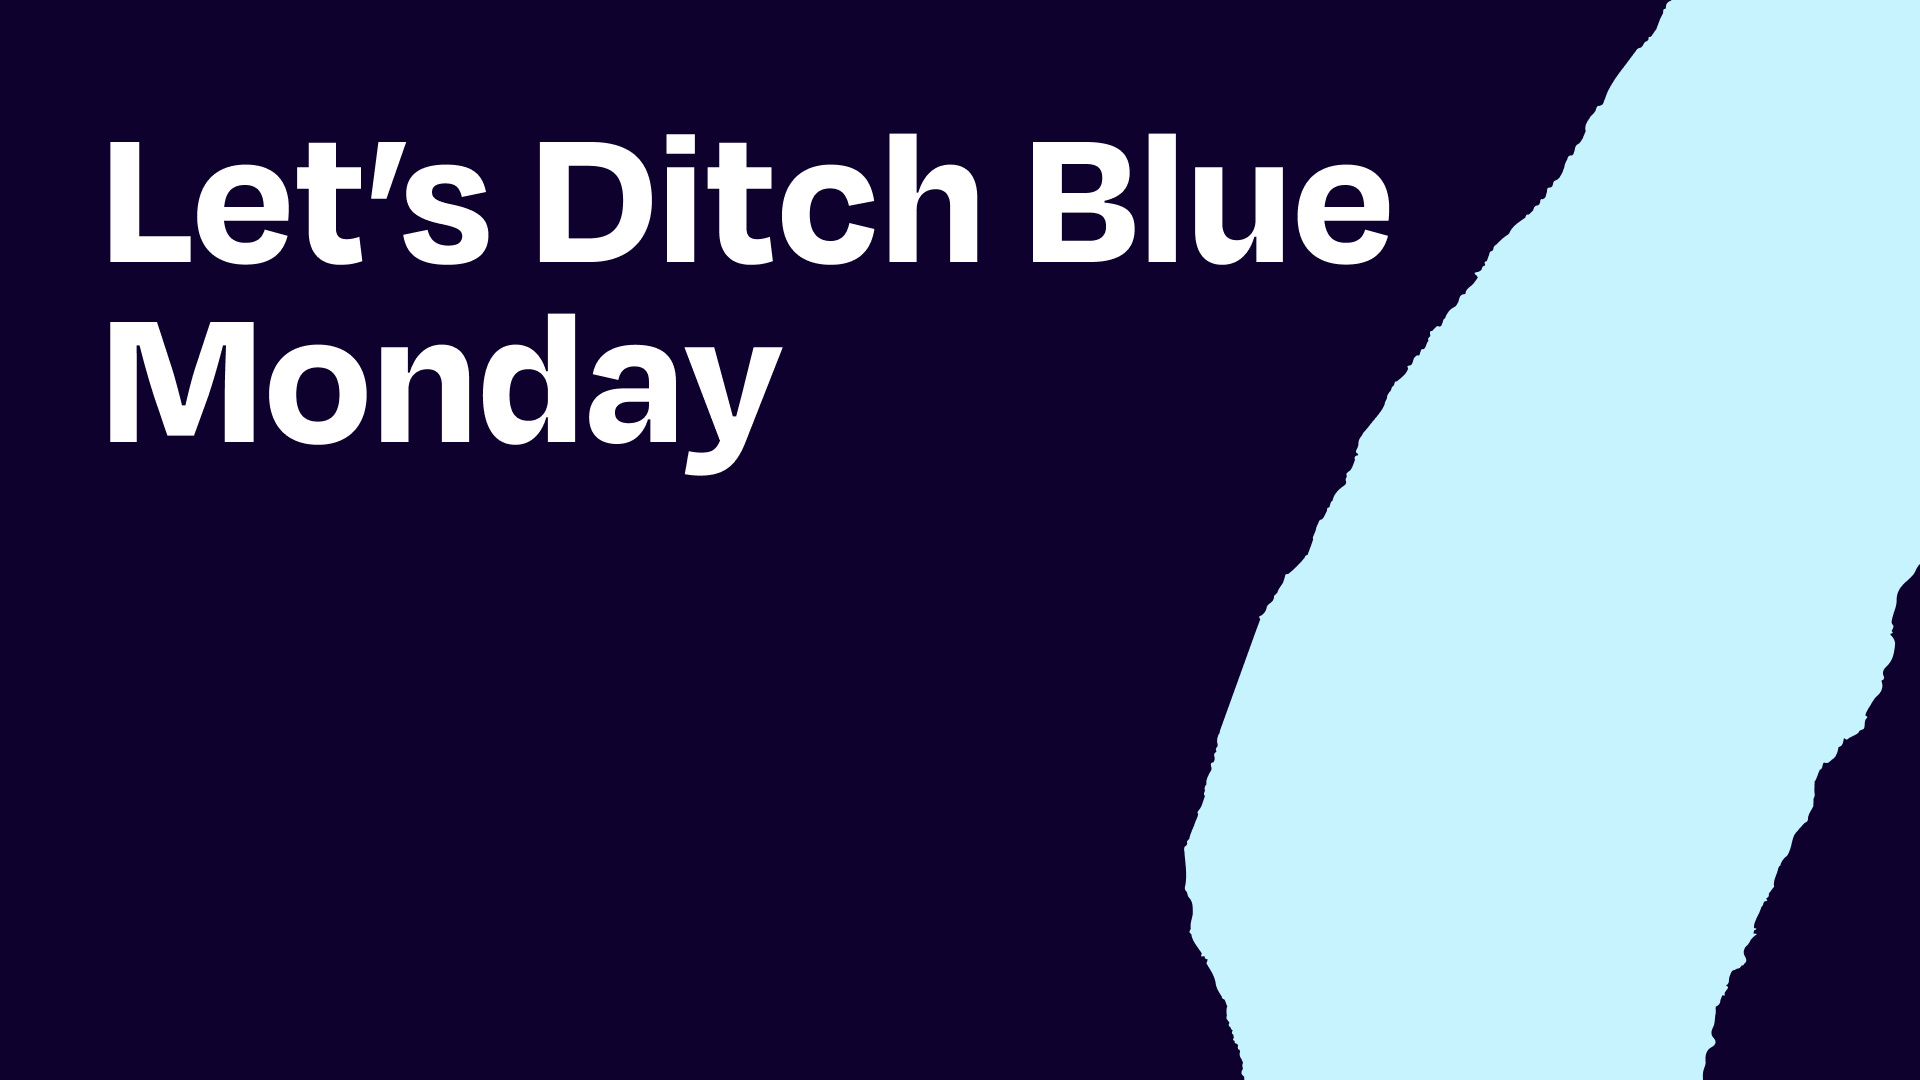 Let’s ditch Blue Monday